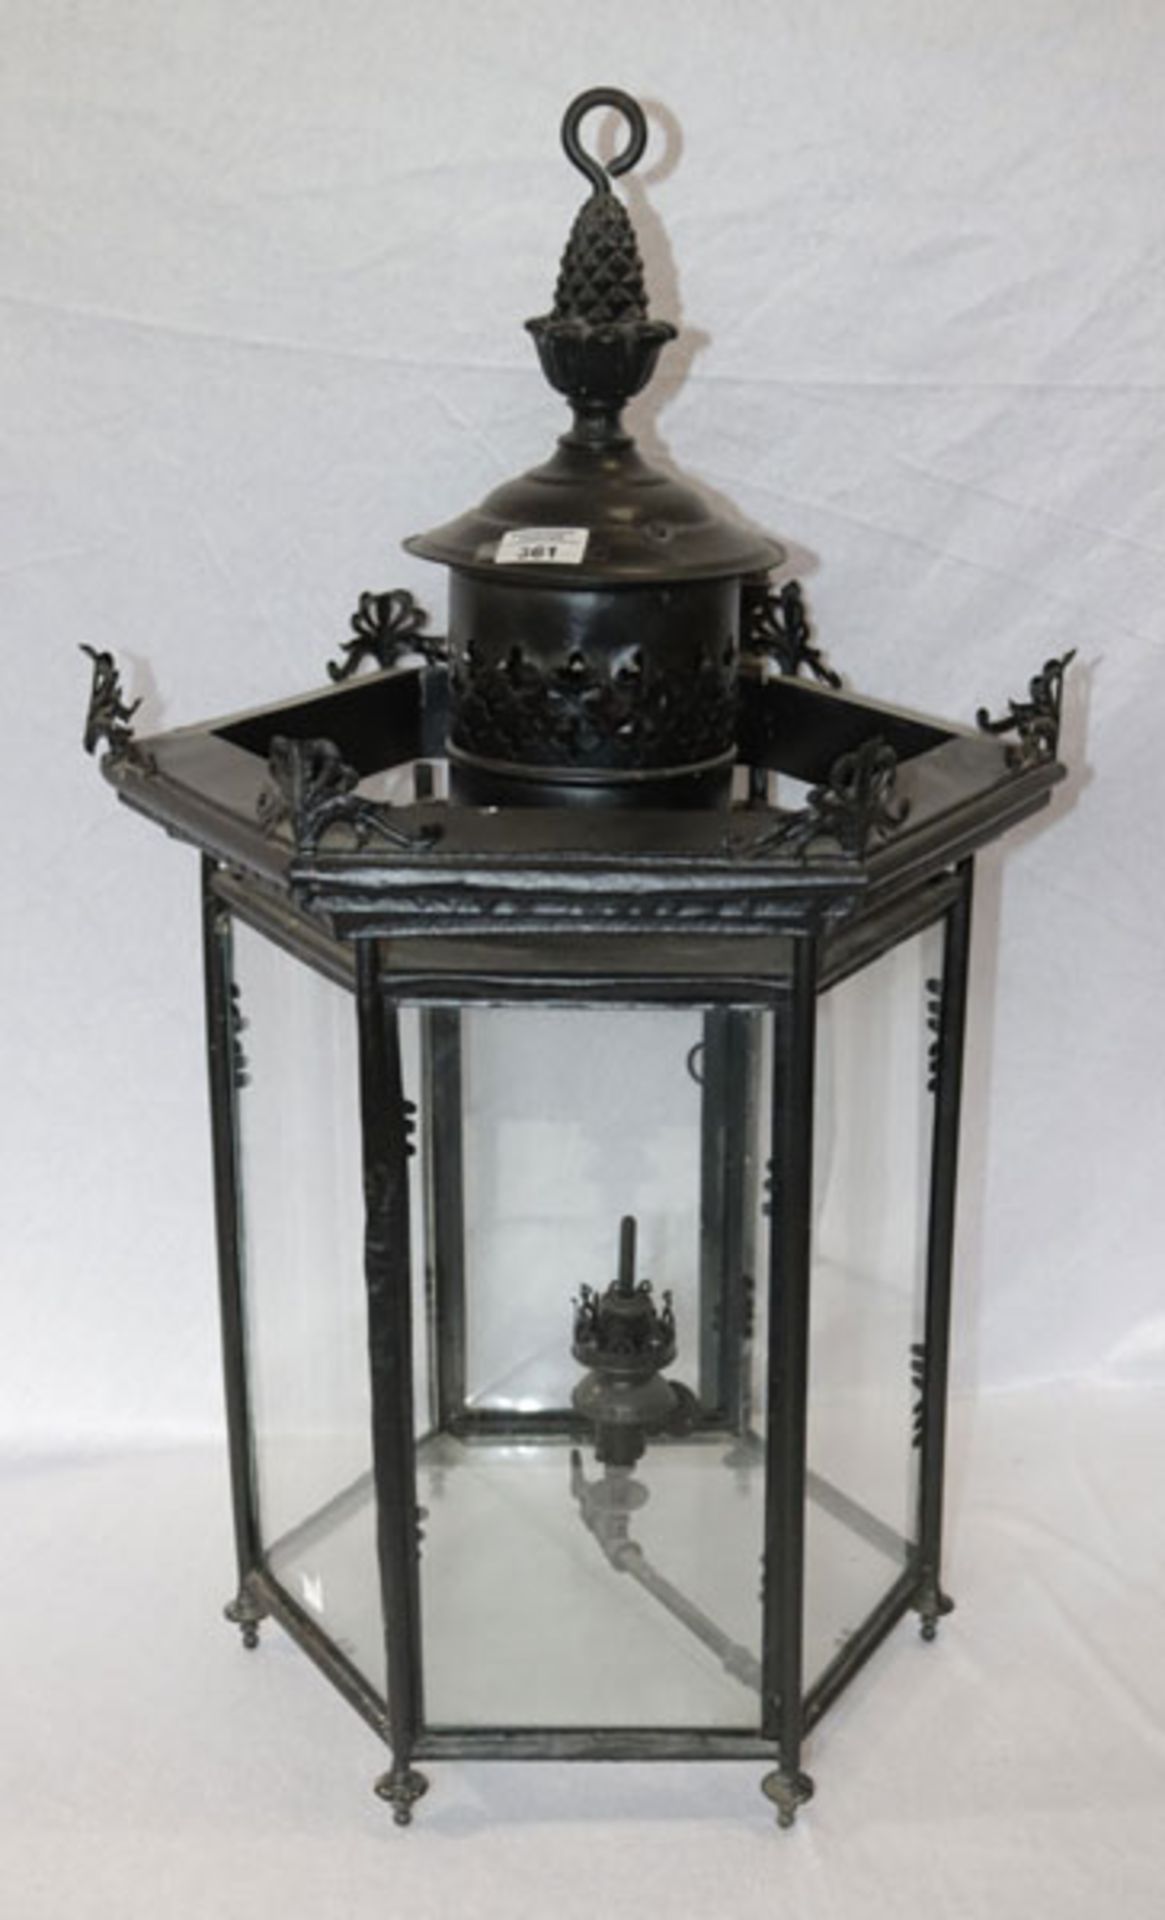 Metall/Glas Öllampe mit Leitungszufuhr, H 78 cm, D ca. 48 cm, Gebrauchsspuren